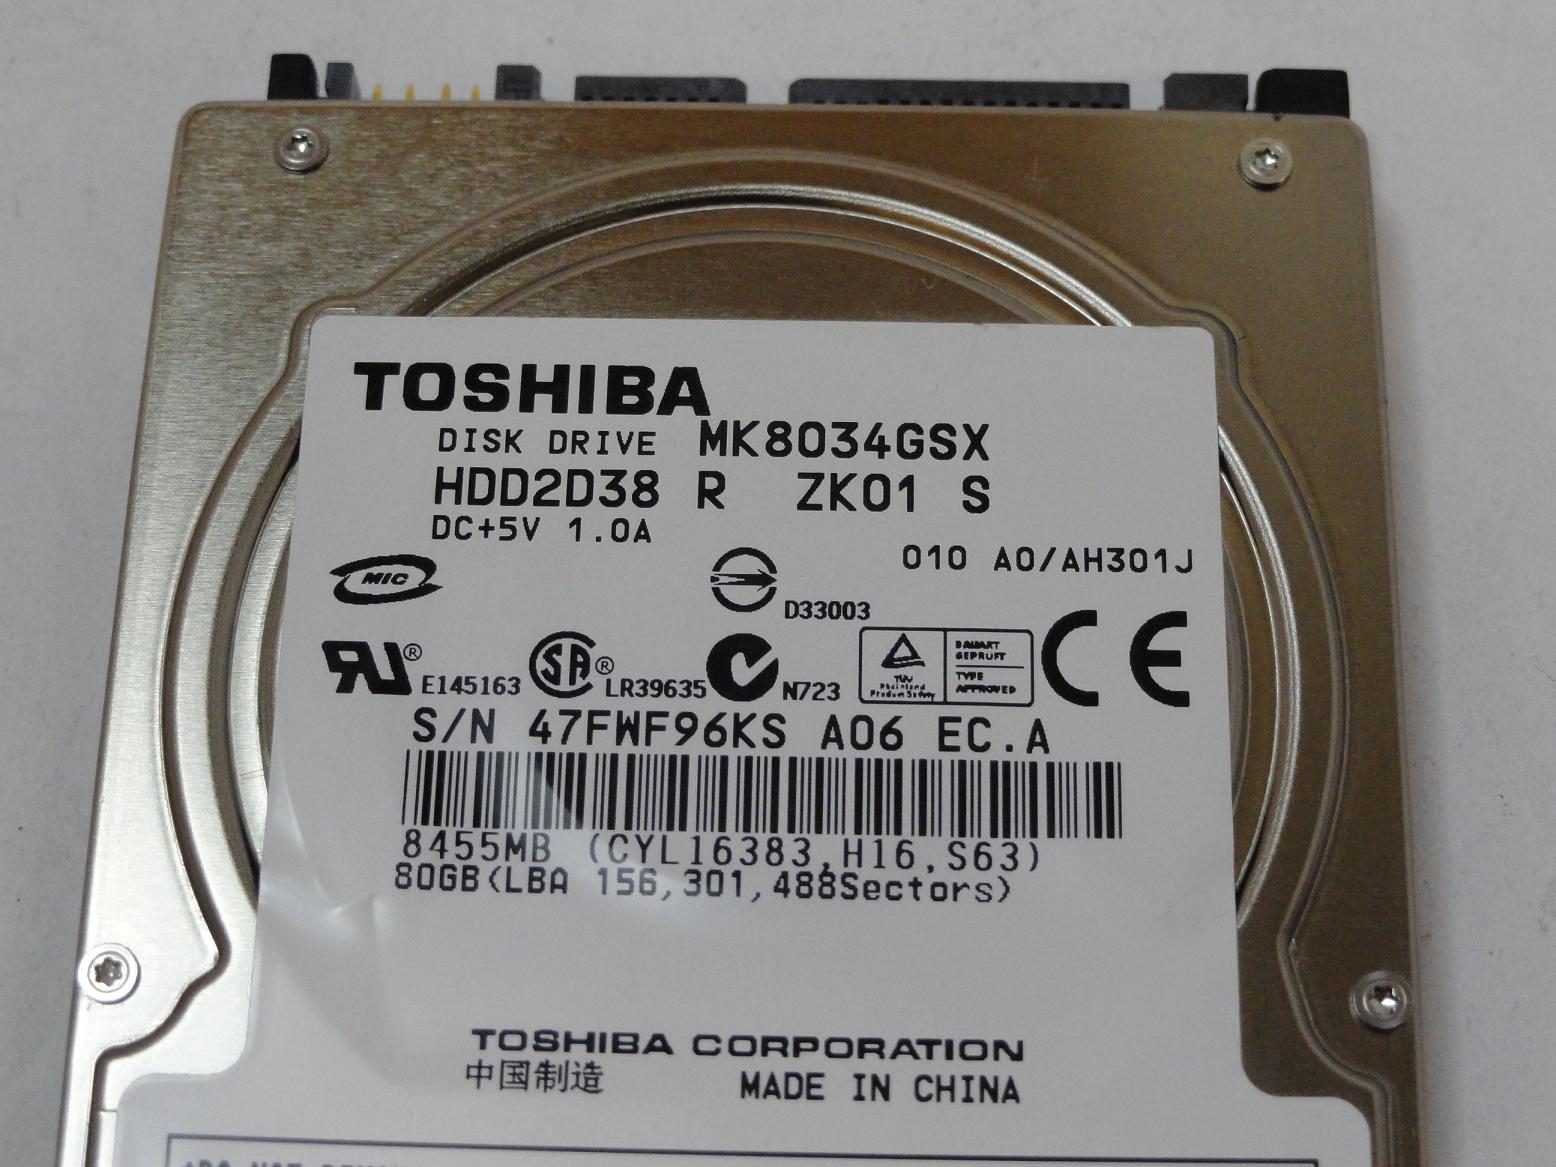 MC4324_MK8034GSX_Toshiba 80GB SATA 5400rpm 2.5in HDD - Image3